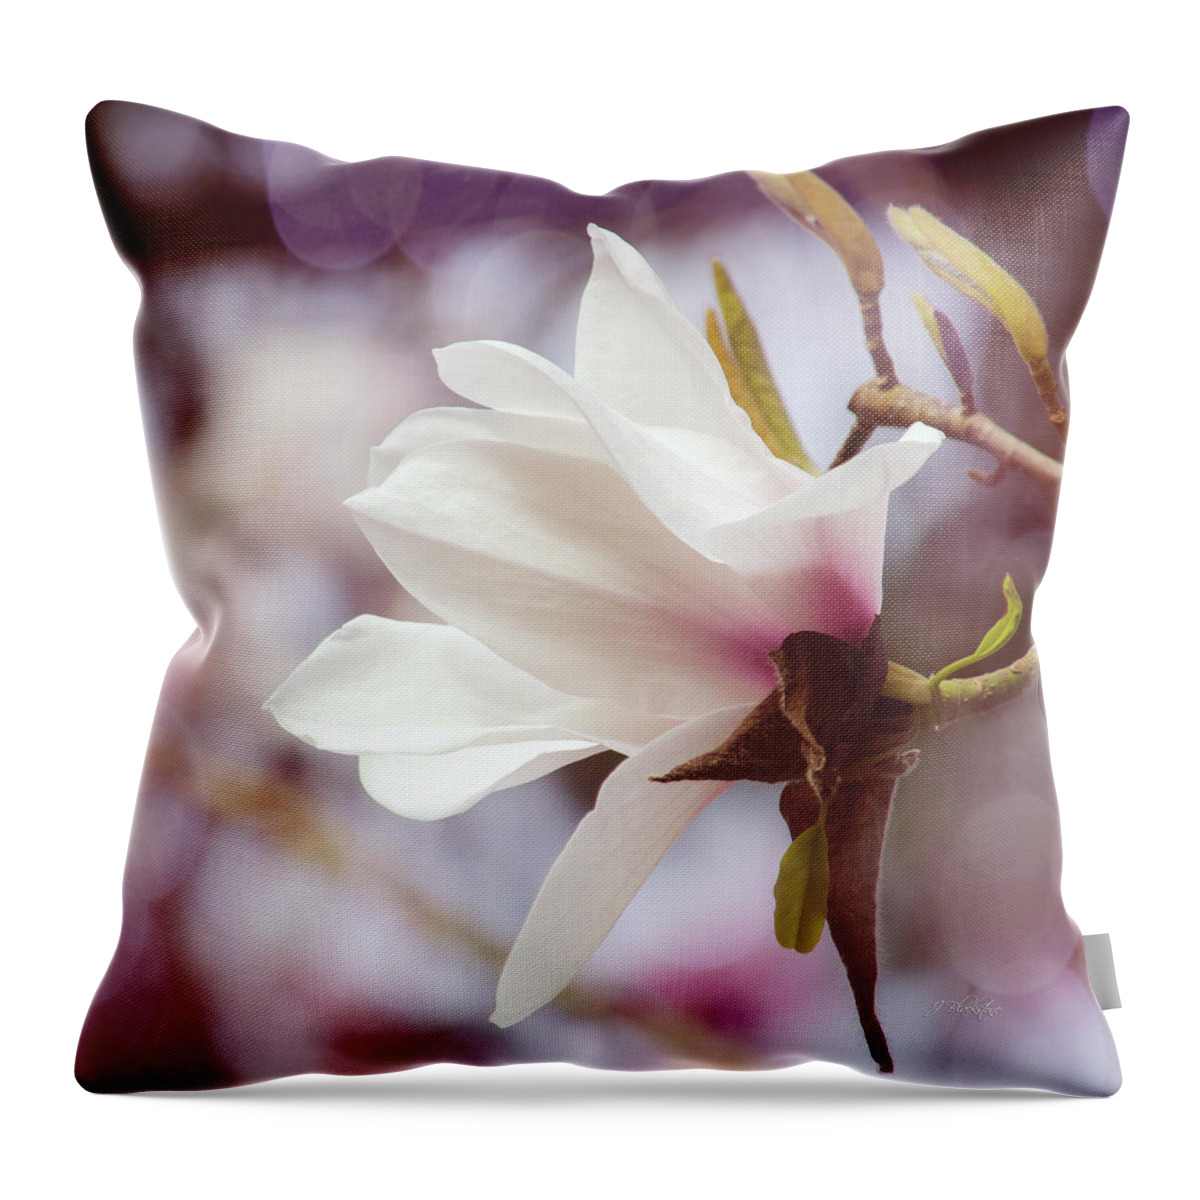 Single White Magnolia Throw Pillow featuring the photograph Single White Magnolia by Jordan Blackstone